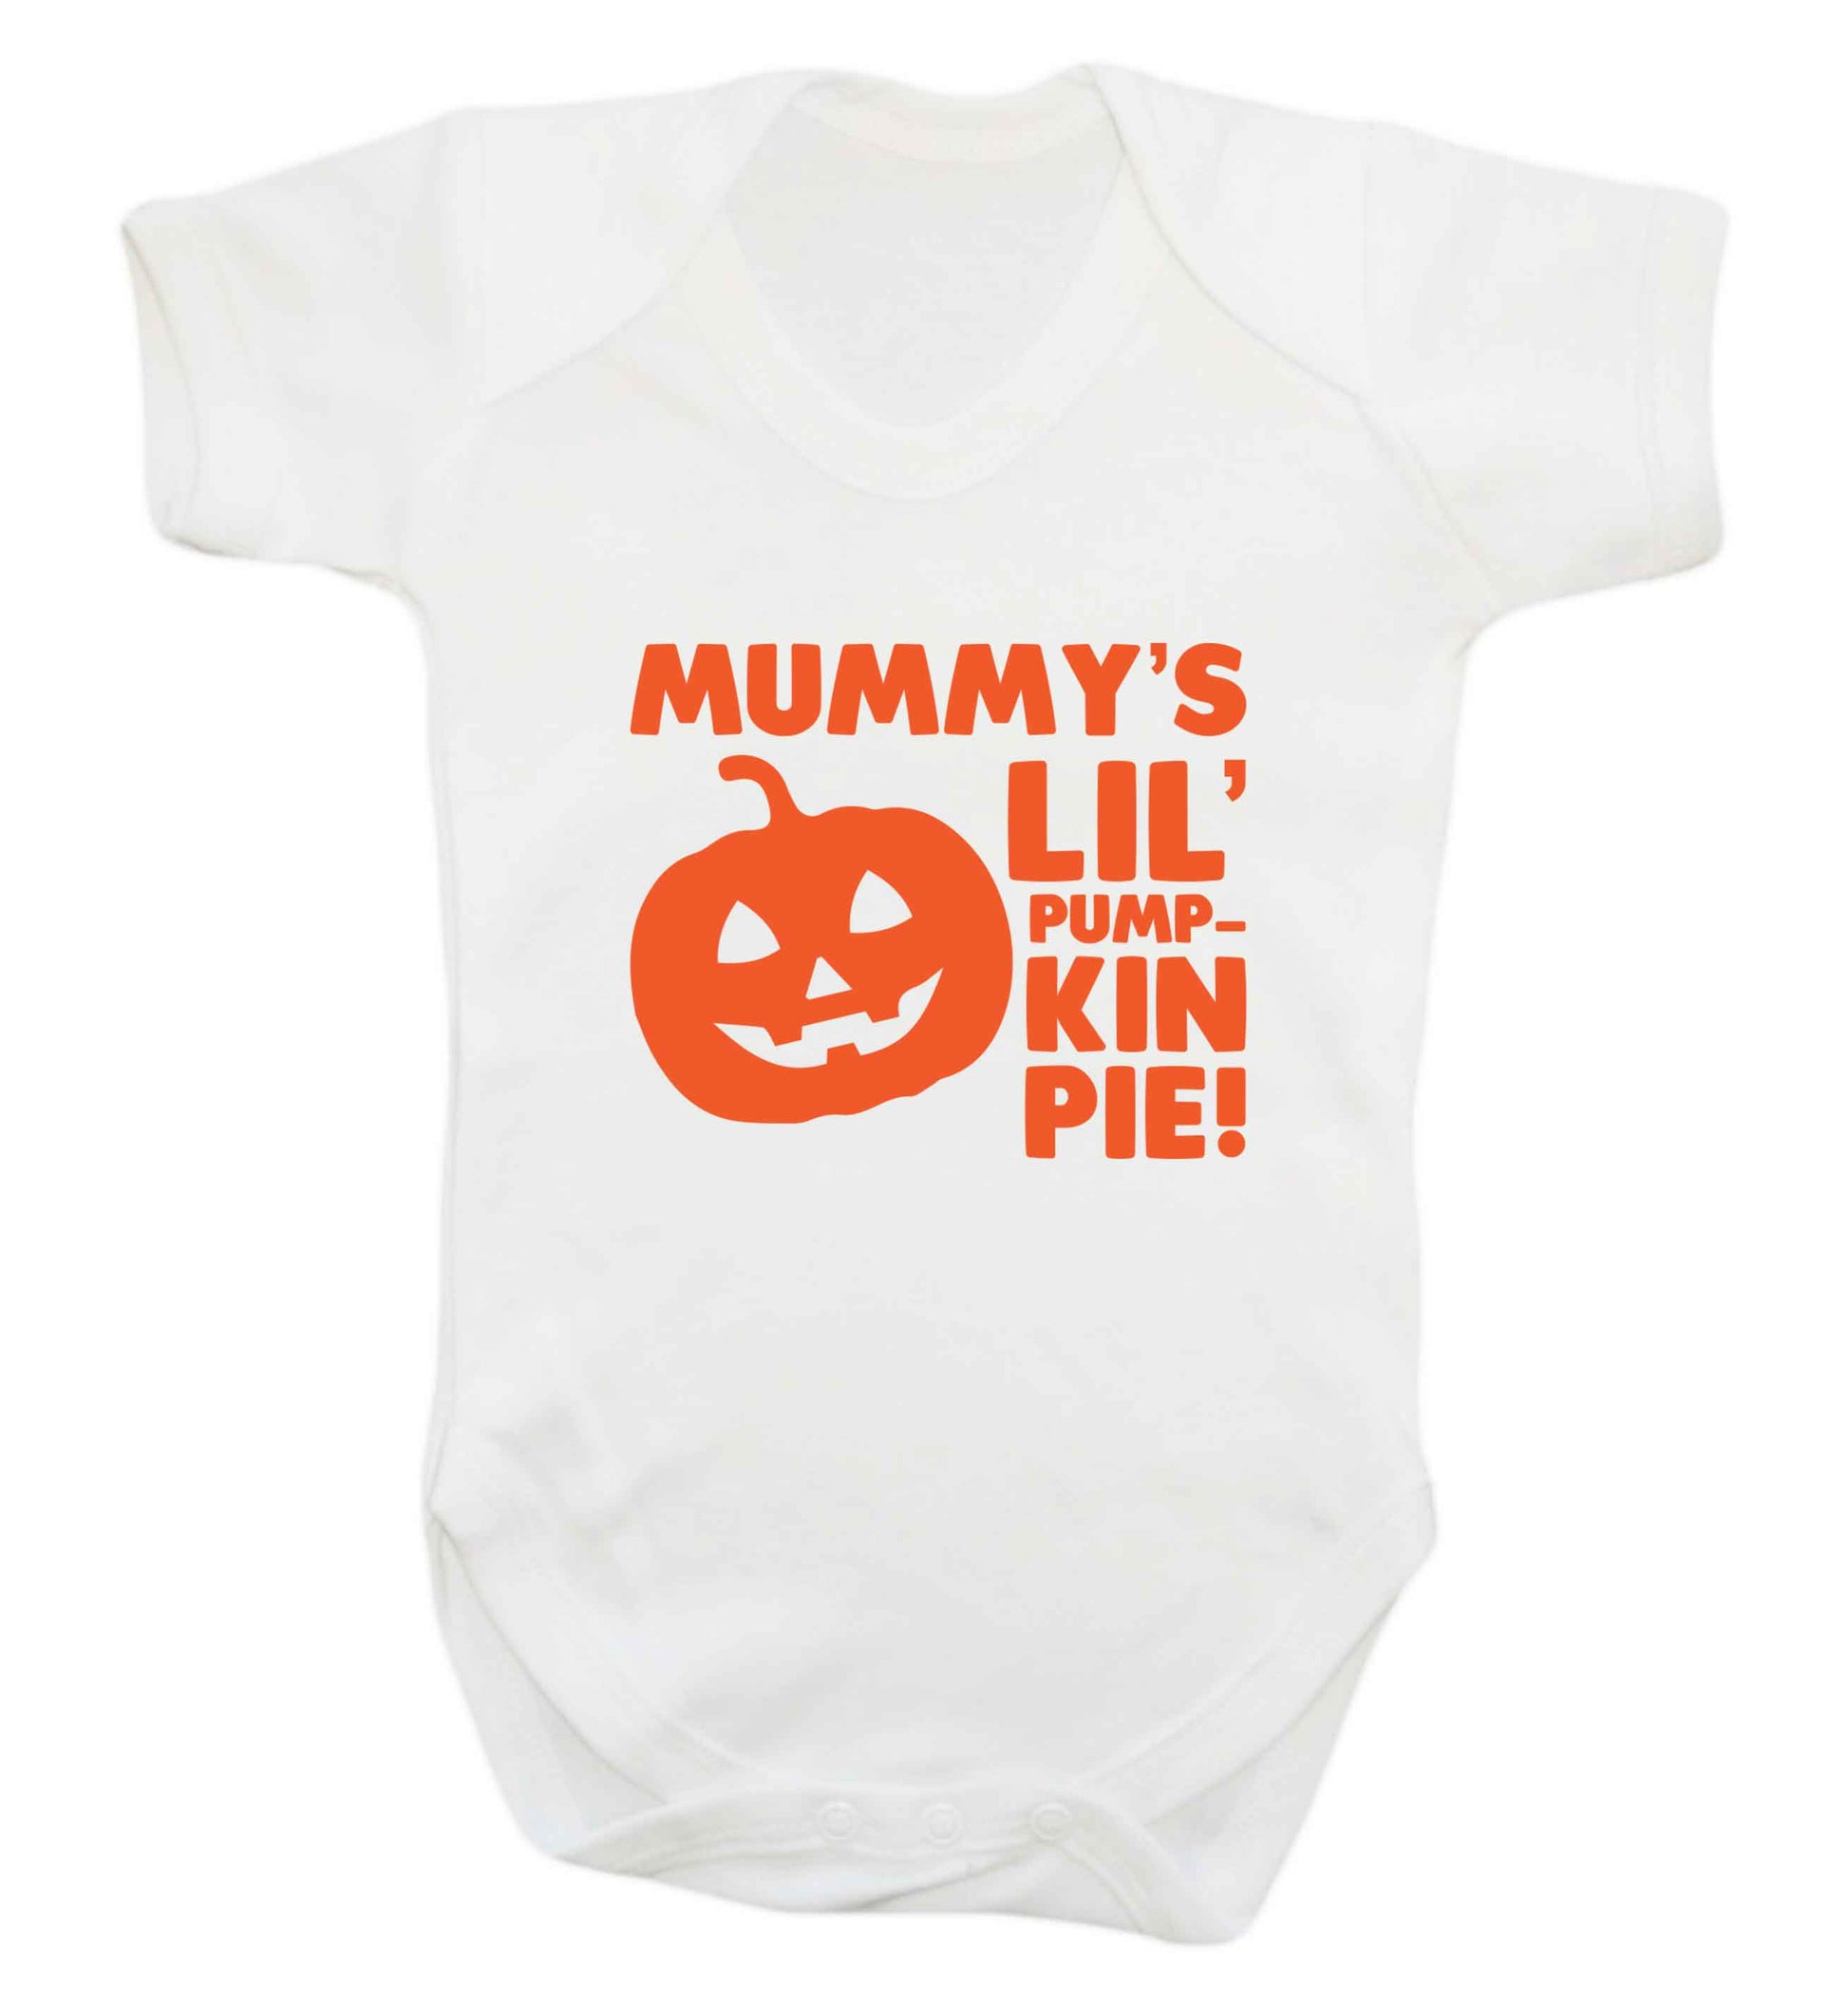 Mummy's lil' pumpkin pie baby vest white 18-24 months